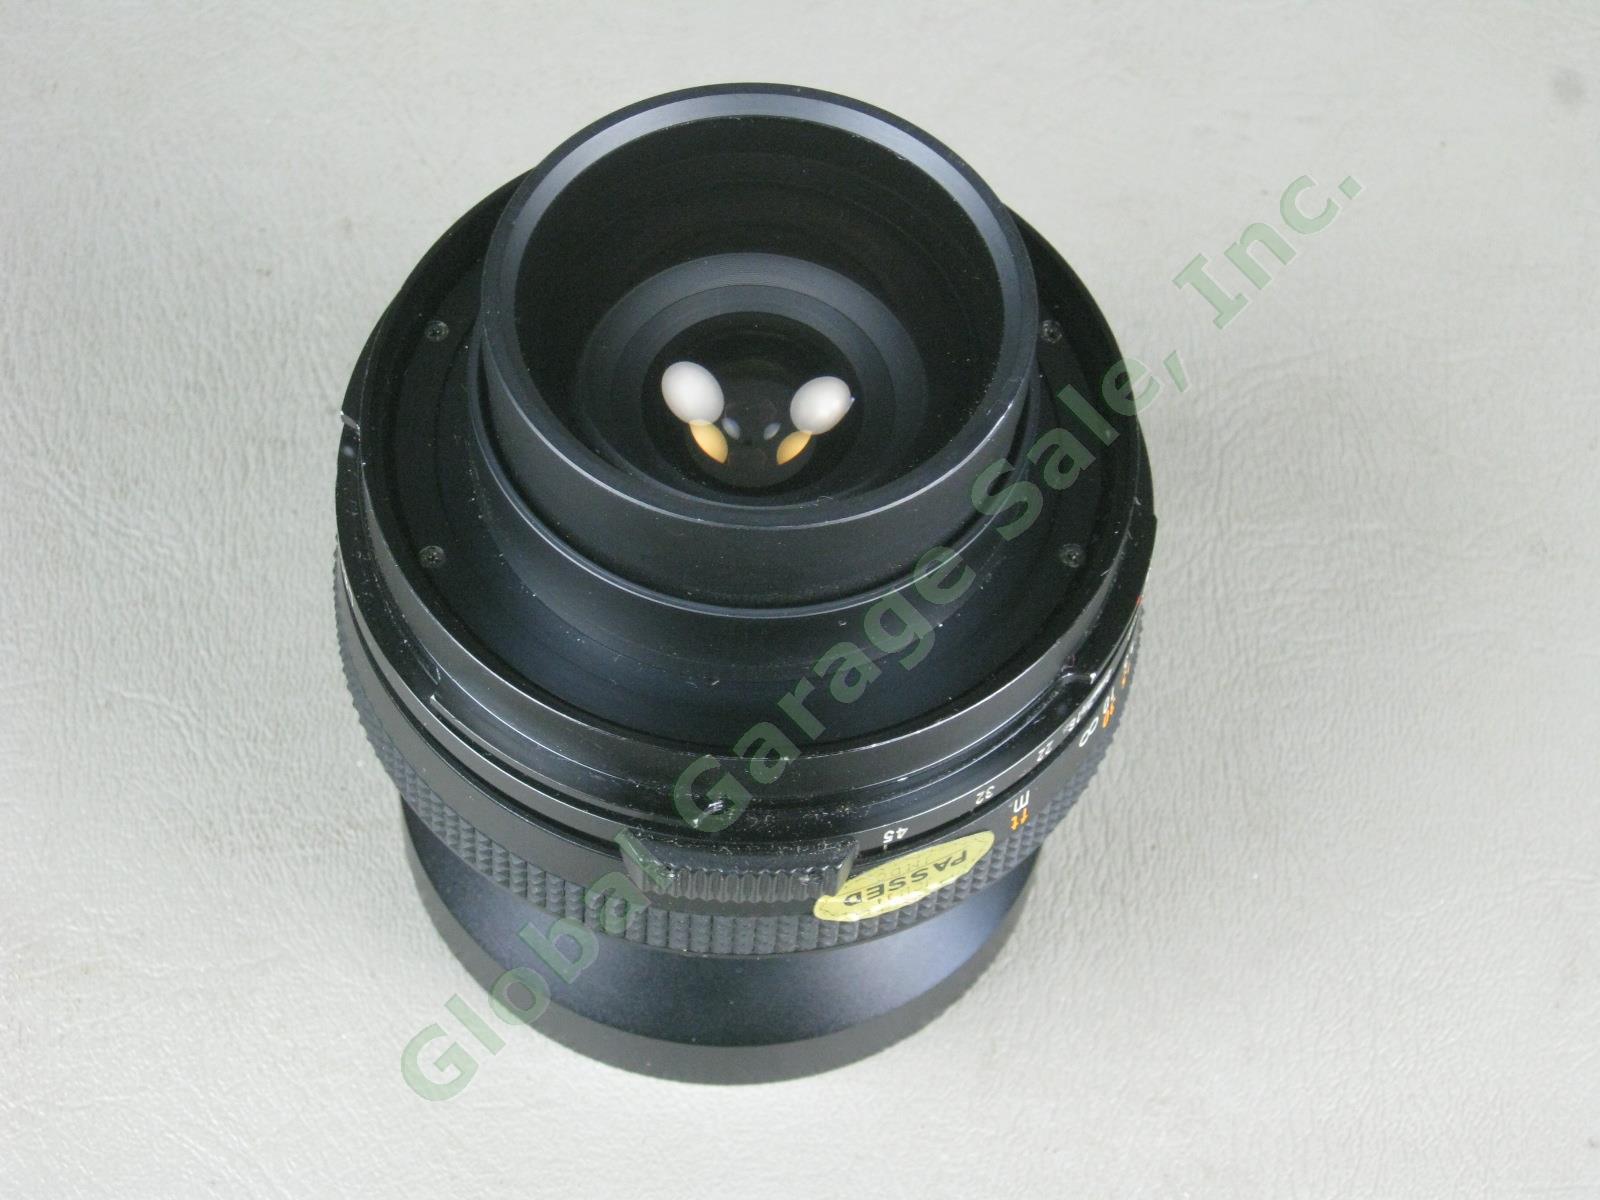 Mamiya 75mm f/5.6 1:5.6 Manual Focus Camera Lens For Polaroid 600 SE NO RESERVE! 4